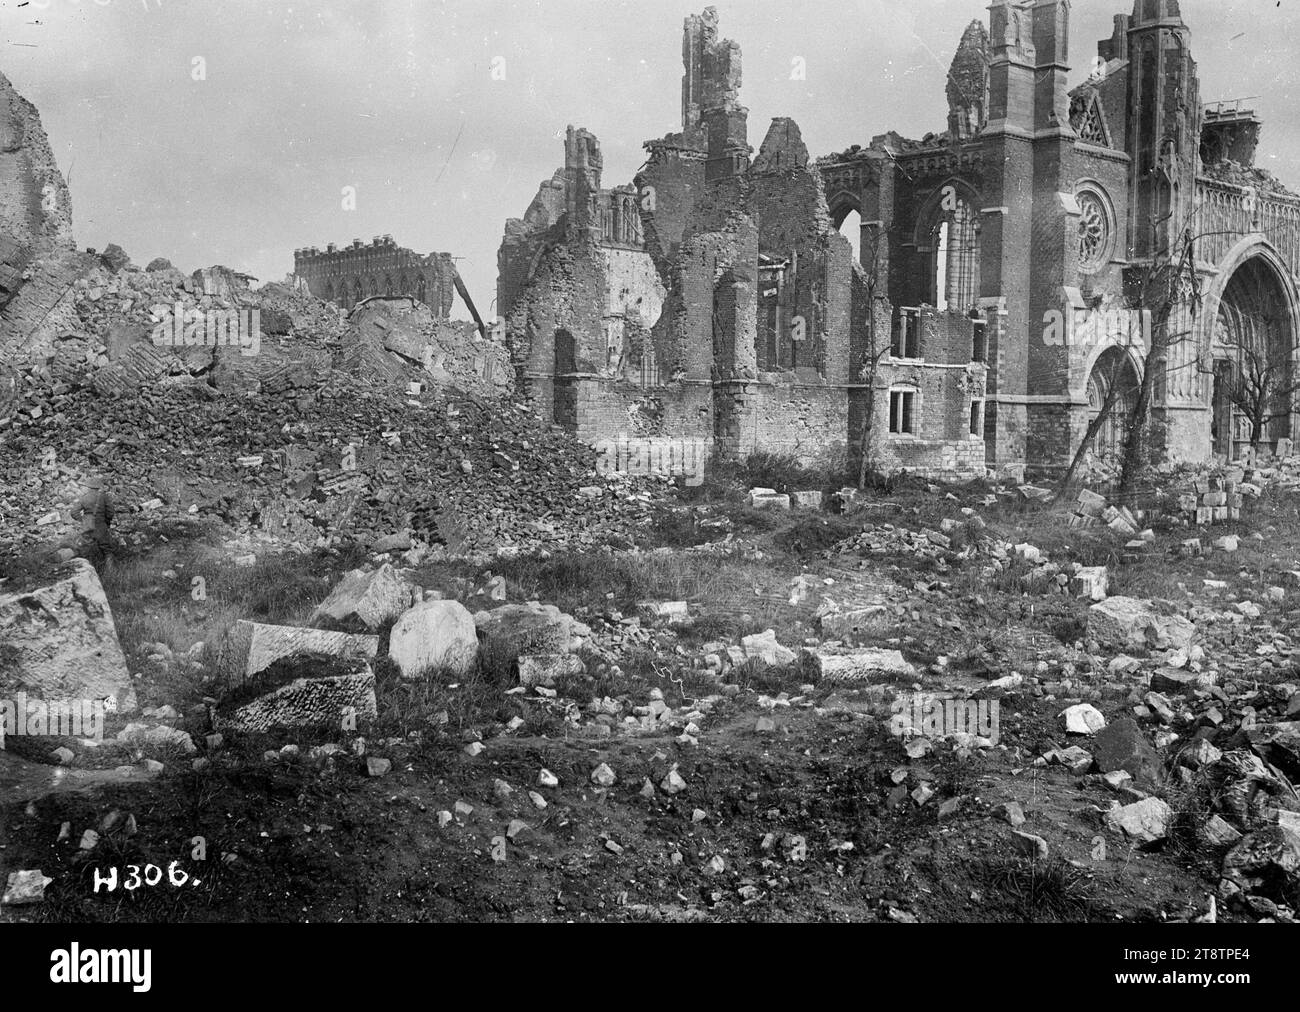 Die Ruinen der Kathedrale von Ypern, Belgien, Eine allgemeine Ansicht der Ruinen der Kathedrale von Ypern, Belgien während des Ersten Weltkriegs Große Mauerwerke sind im Vordergrund zu sehen. Foto vom 4. Oktober 1917 Stockfoto